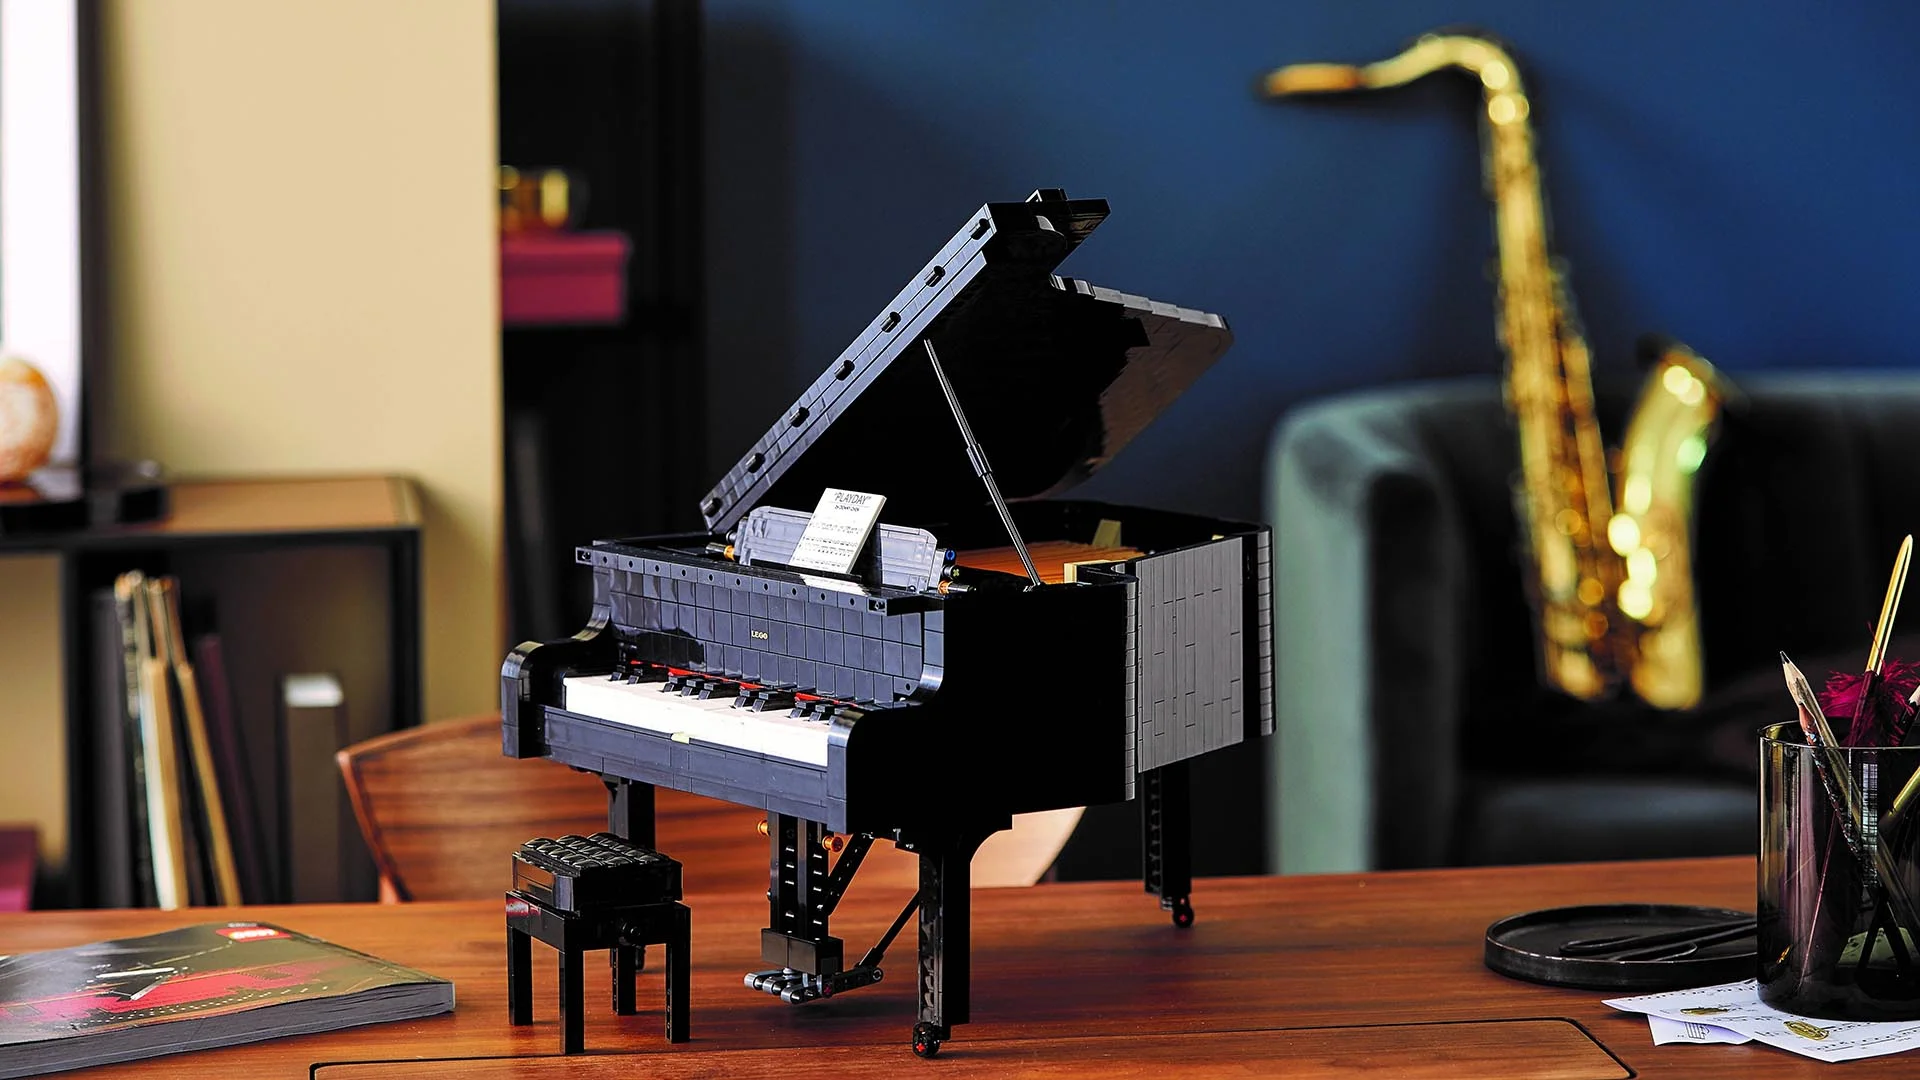 Компанія Lego випускає конструктор для дорослих, які захоплюються музикою - фото 486092